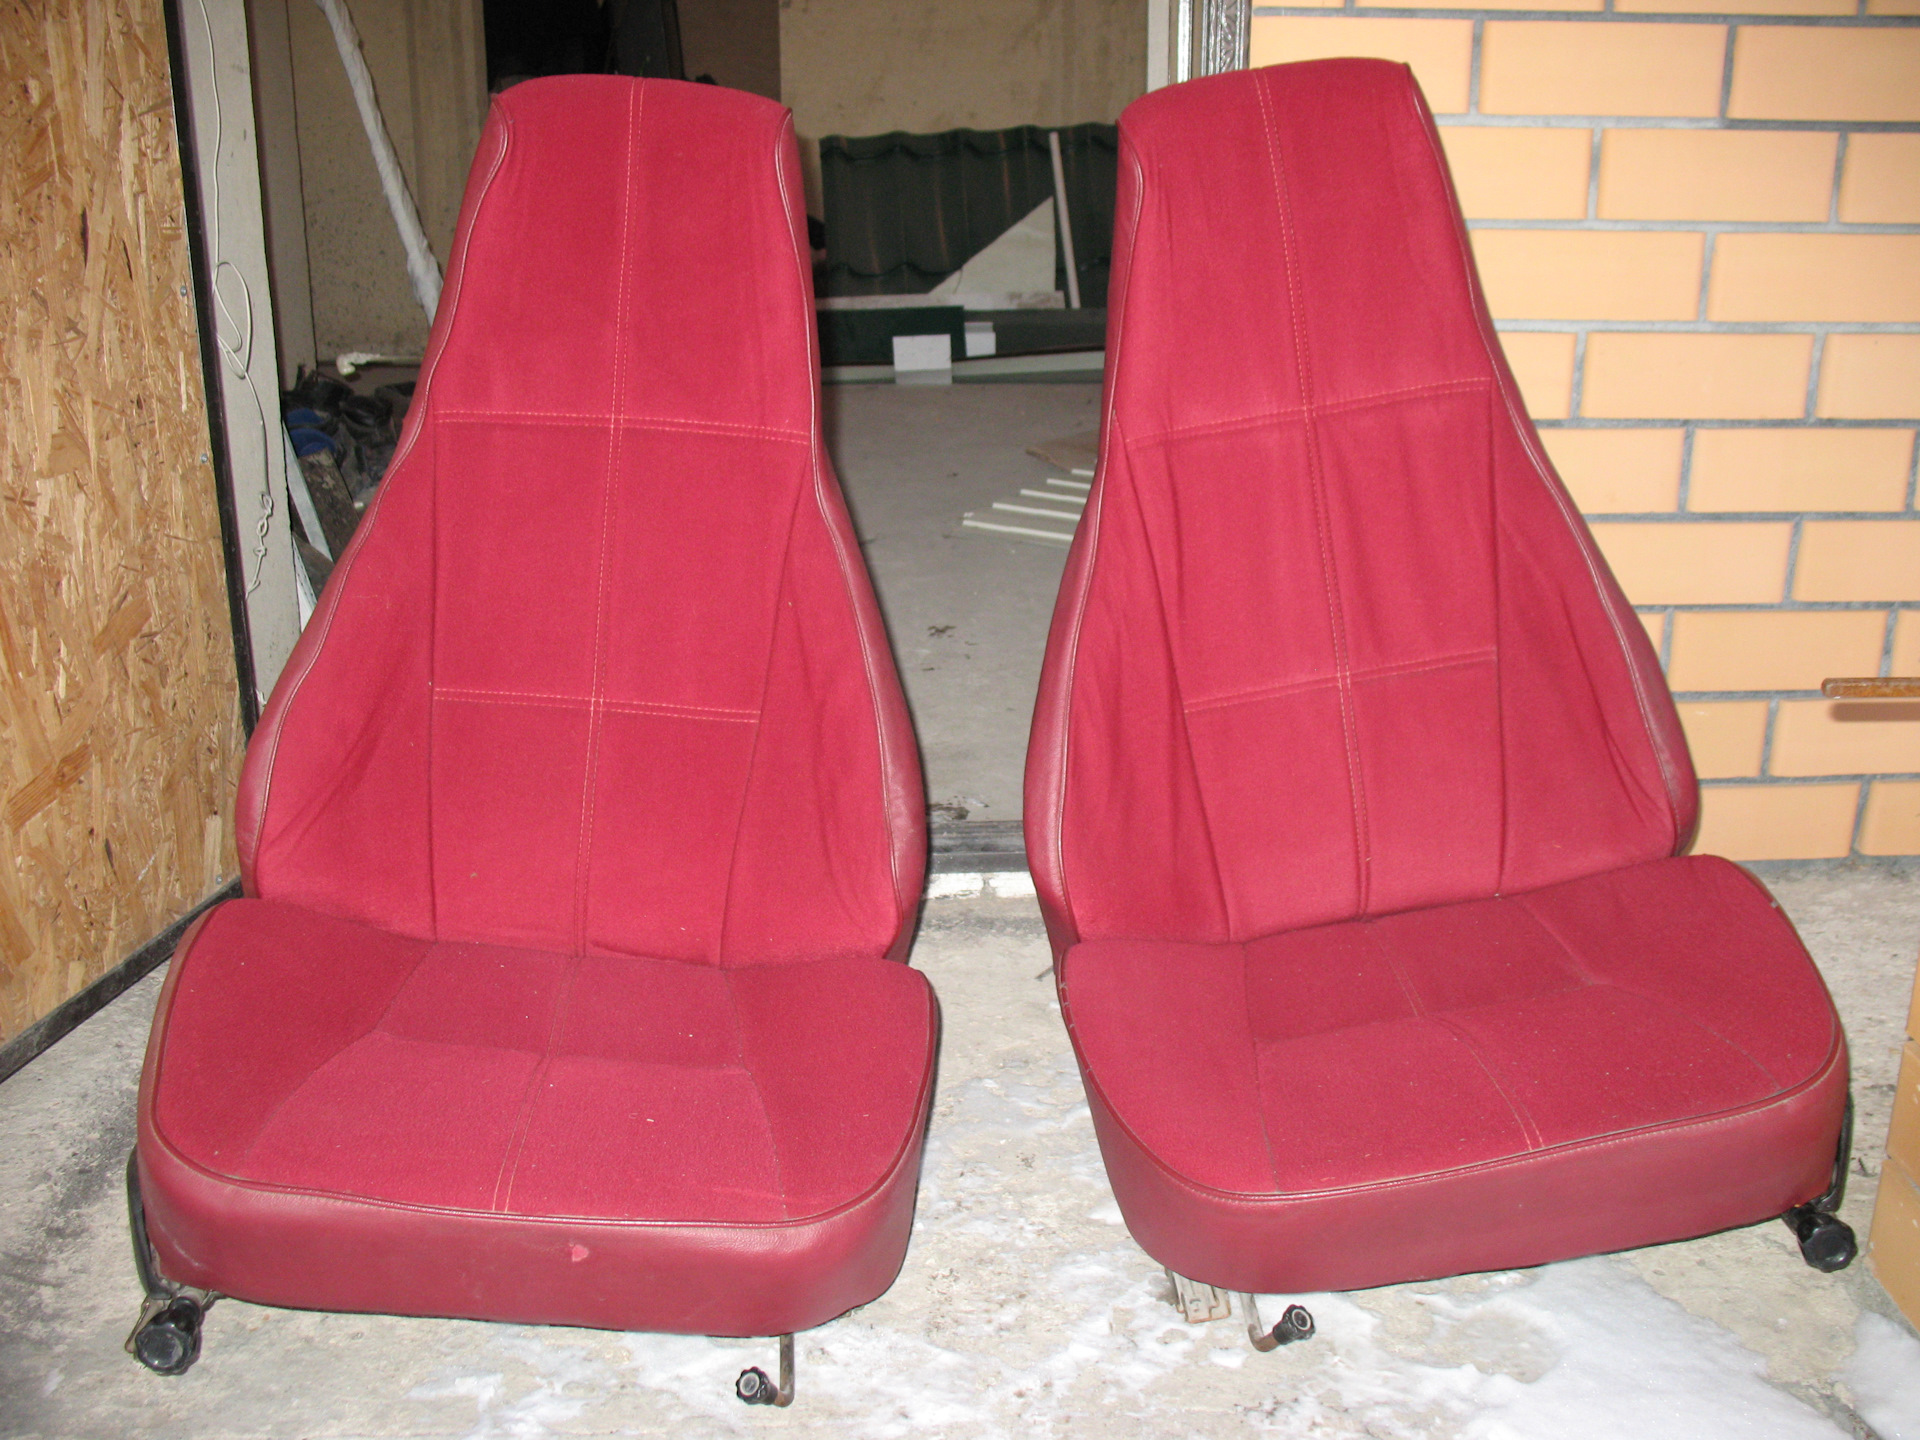 Купить передние сиденья на ваз 2107. Сиденья ВАЗ 2107. Комплект сидений на ВАЗ 2107. Новое сидение на ВАЗ 2107. Кресла передние ВАЗ 2107 П.